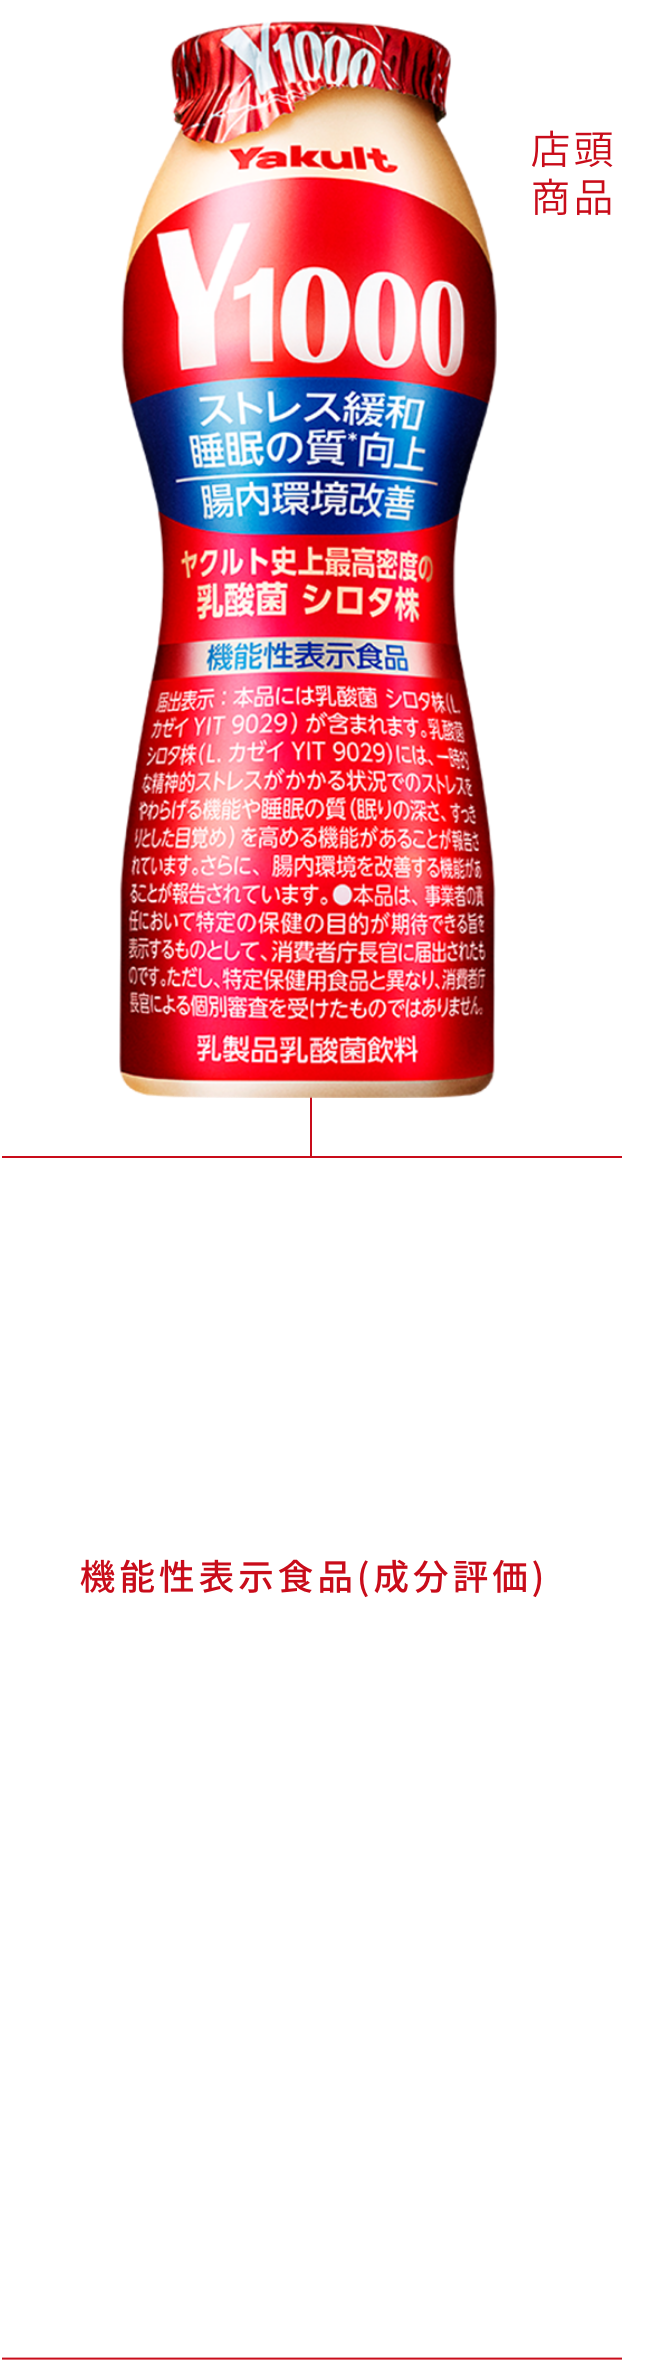 店頭商品 Y1000の画像 Y1000のロゴ メーカー希望小売価格150円(税別) 機能性表示食品(成分評価)